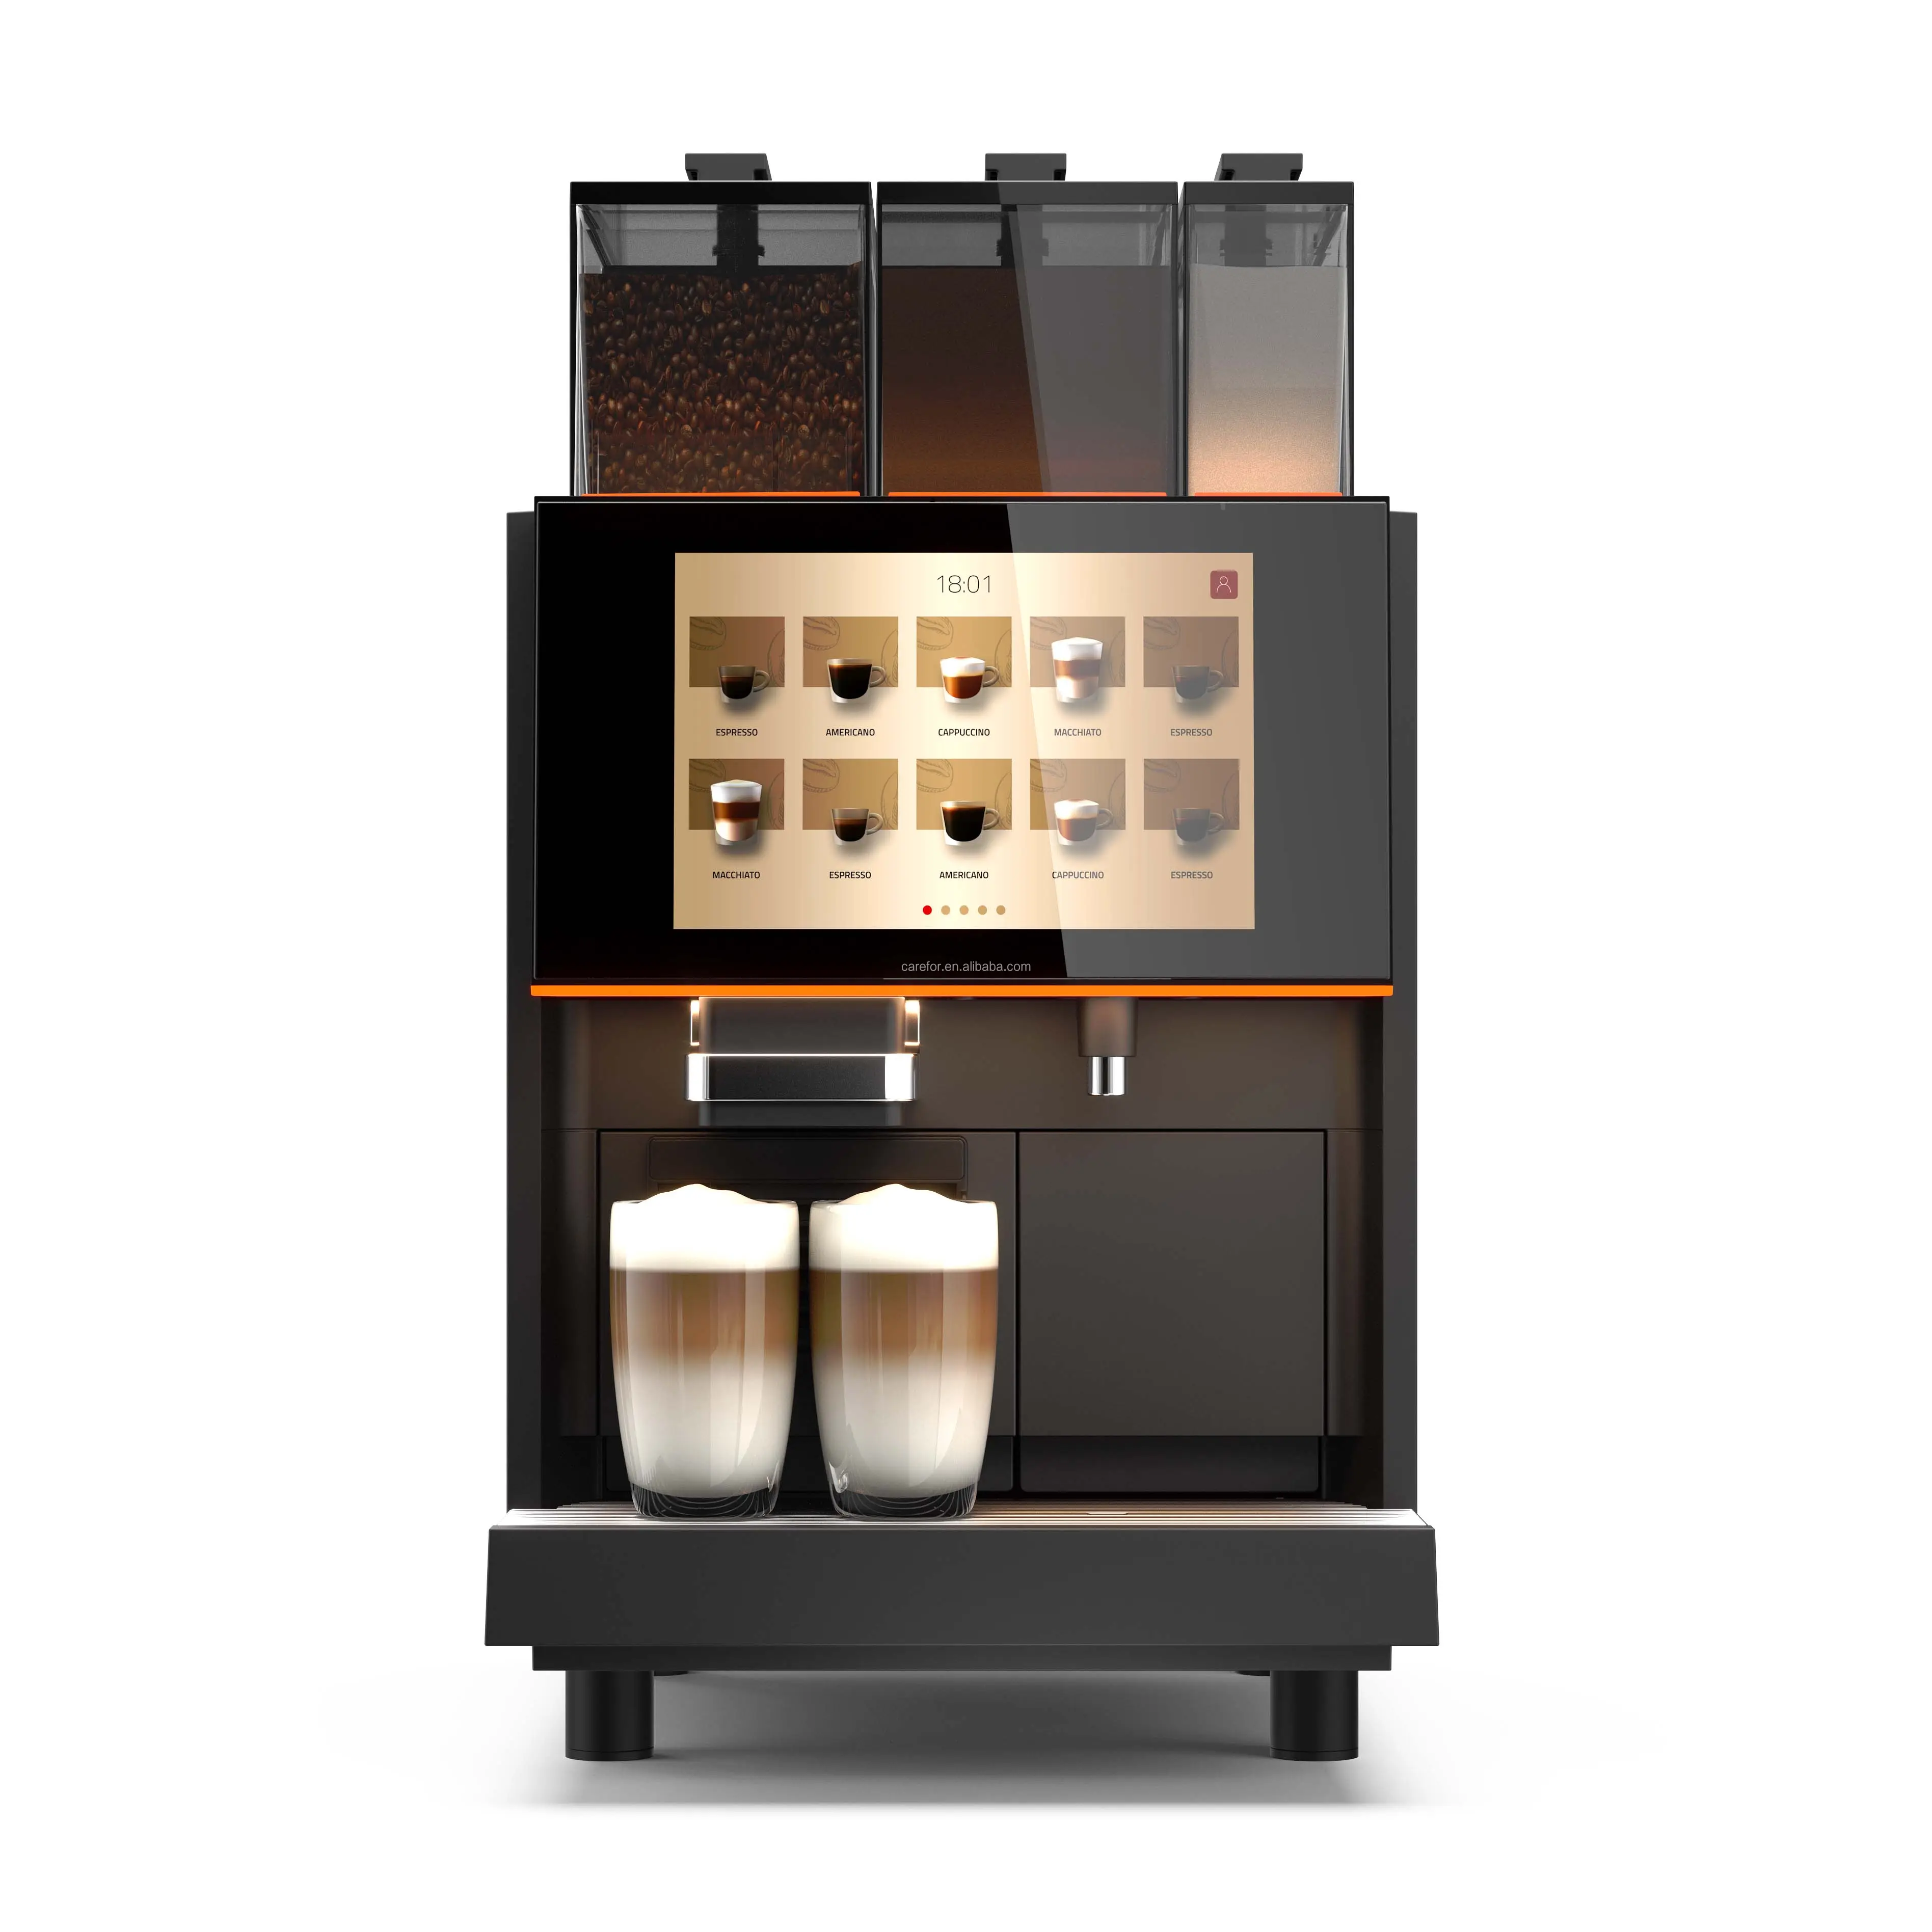 Satılık tam otomatik Espresso makinesi Oracle dokunmatik kahve makinesi